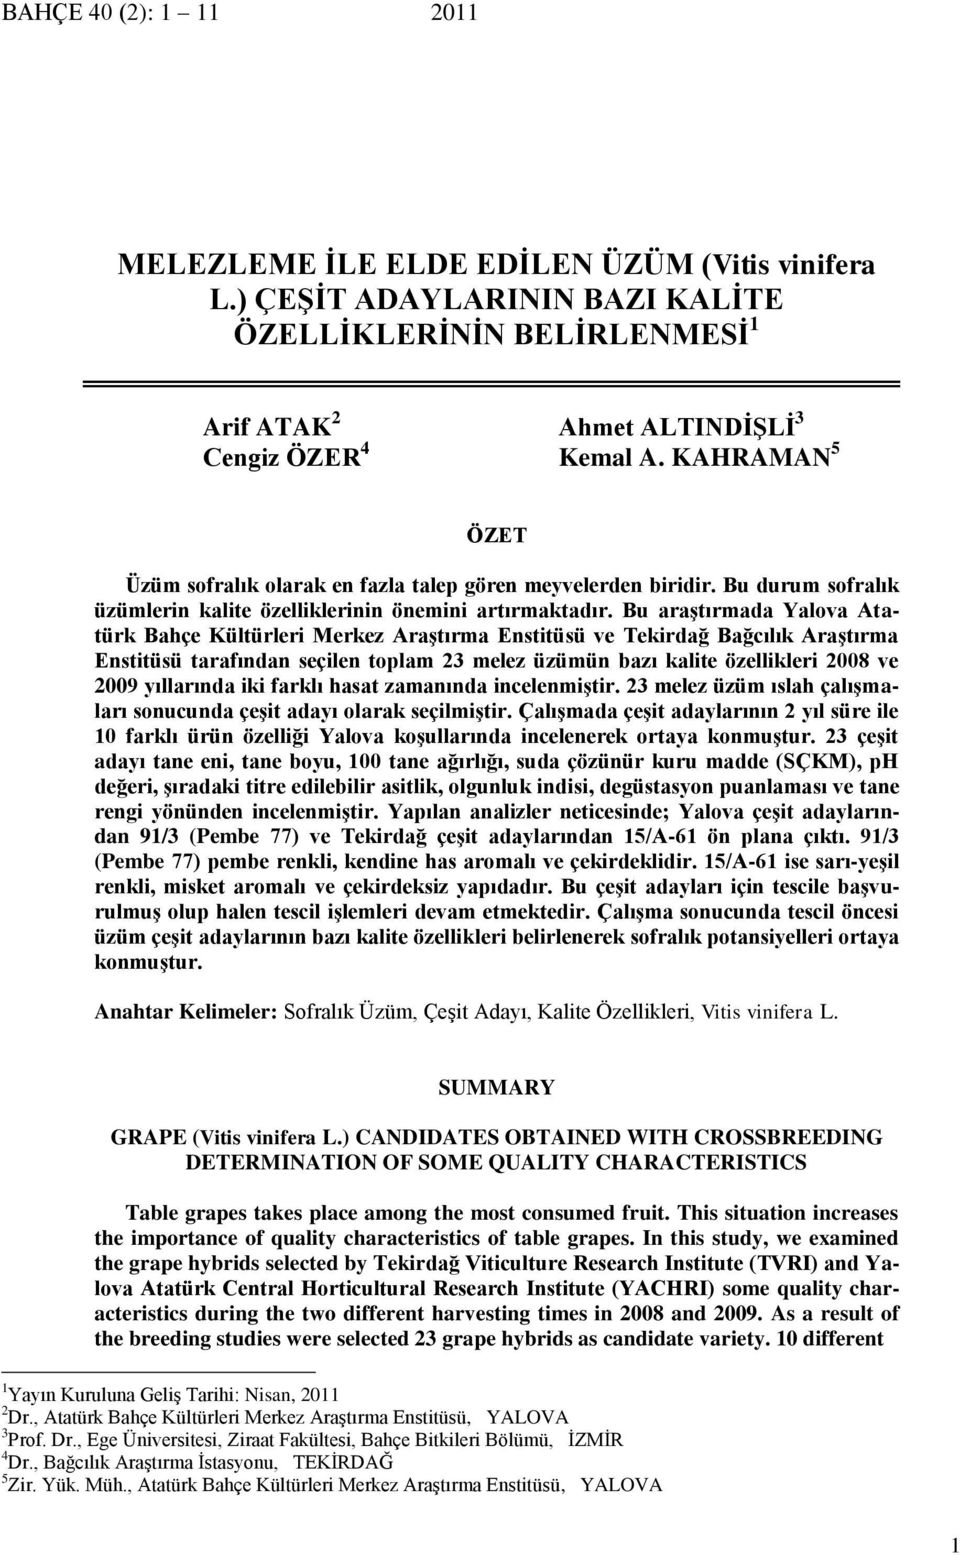 Bu araştırmada Yalova Atatürk Bahçe Kültürleri Merkez Araştırma Enstitüsü ve Tekirdağ Bağcılık Araştırma Enstitüsü tarafından seçilen toplam 23 melez üzümün bazı kalite özellikleri 2008 ve 2009